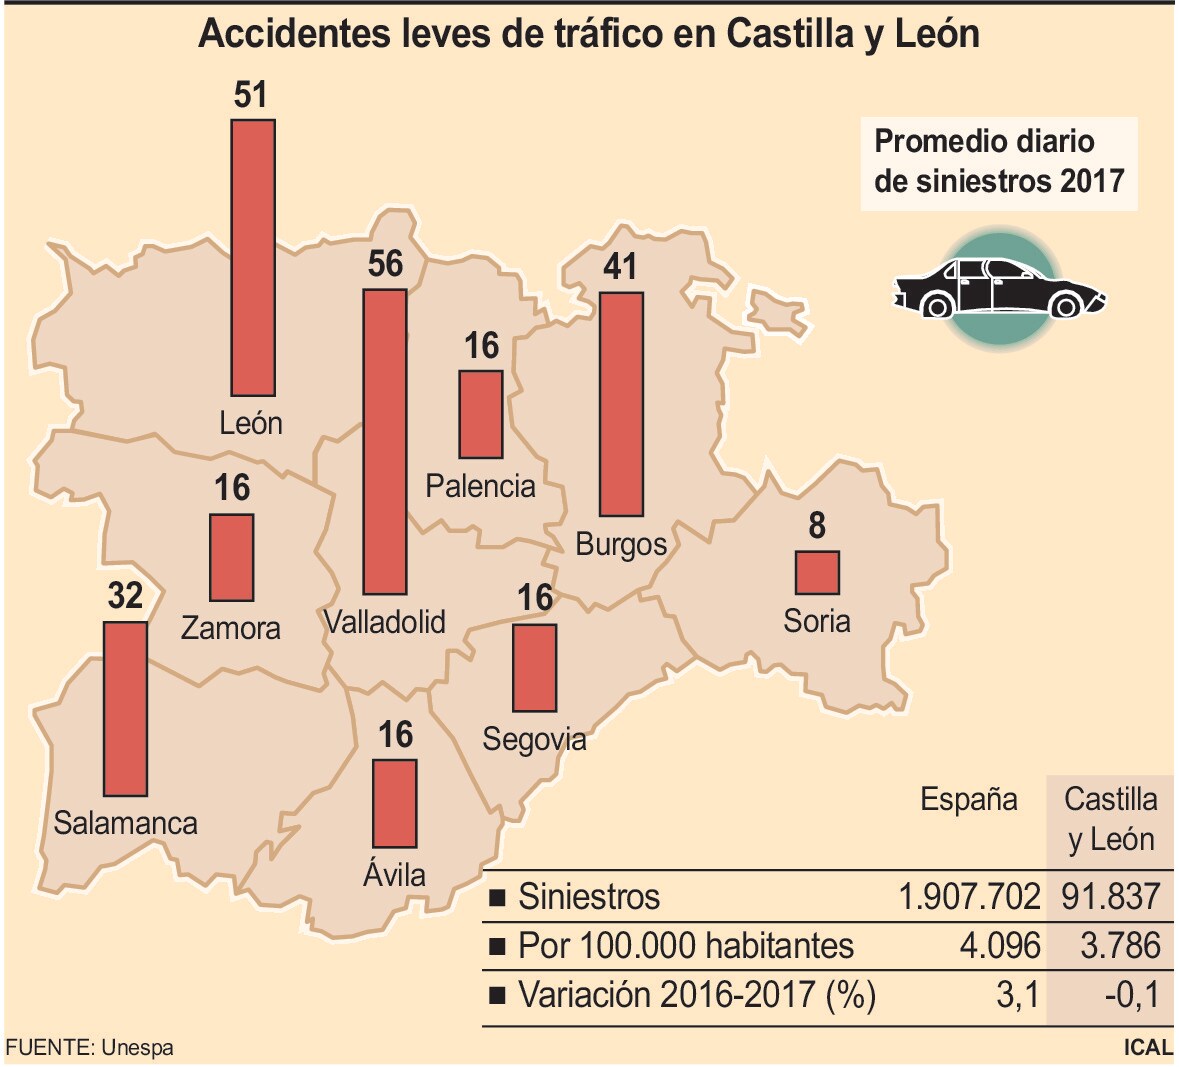 Accidentes leves de tráfico en Castilla y León